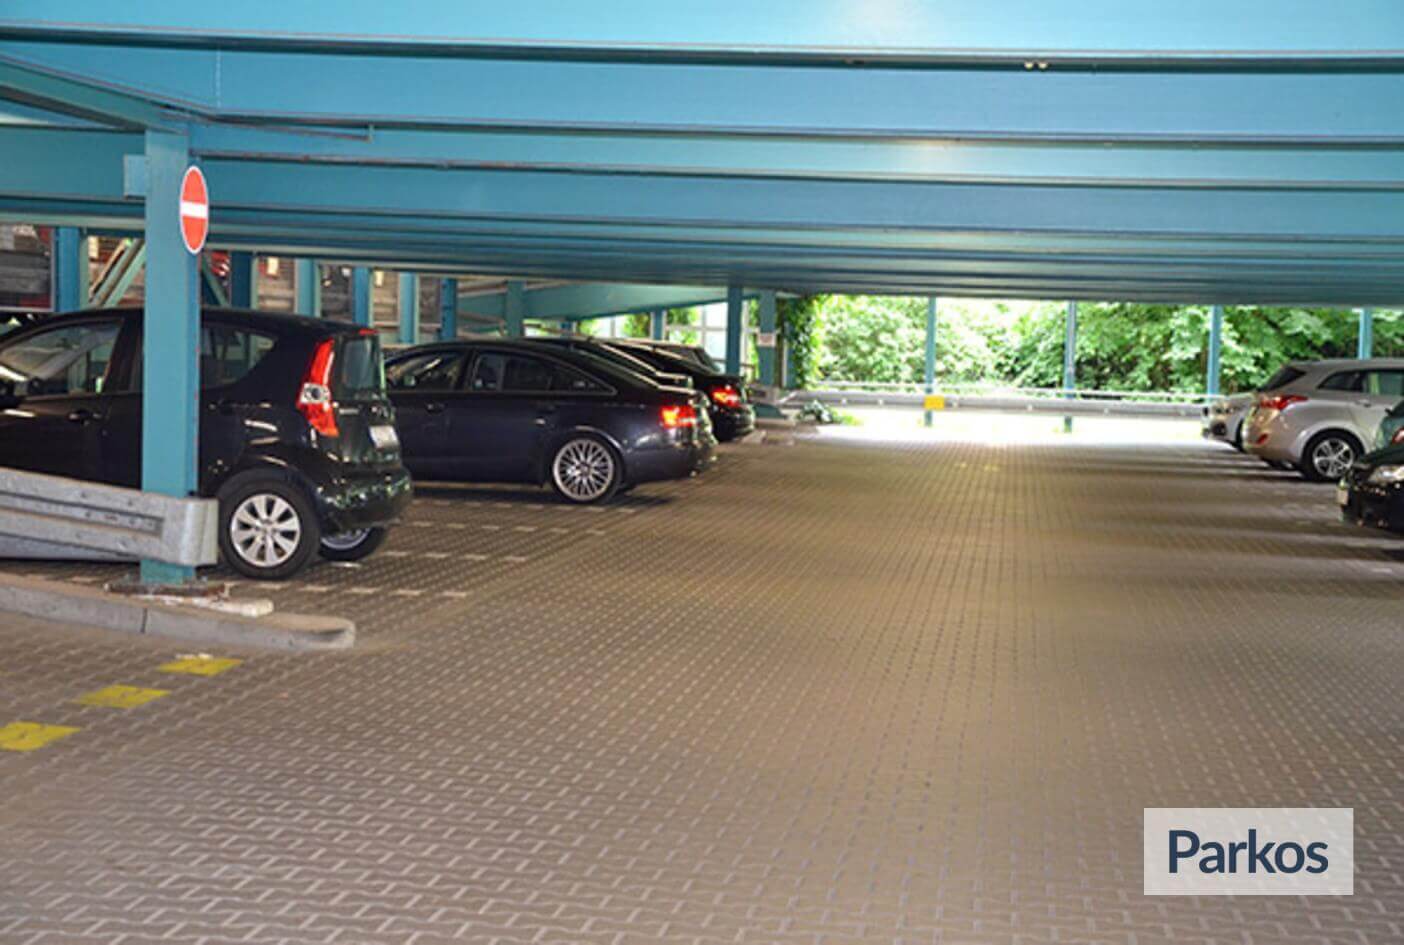 Mainparkhaus Frankfurt - Parking Aéroport Francfort - picture 1